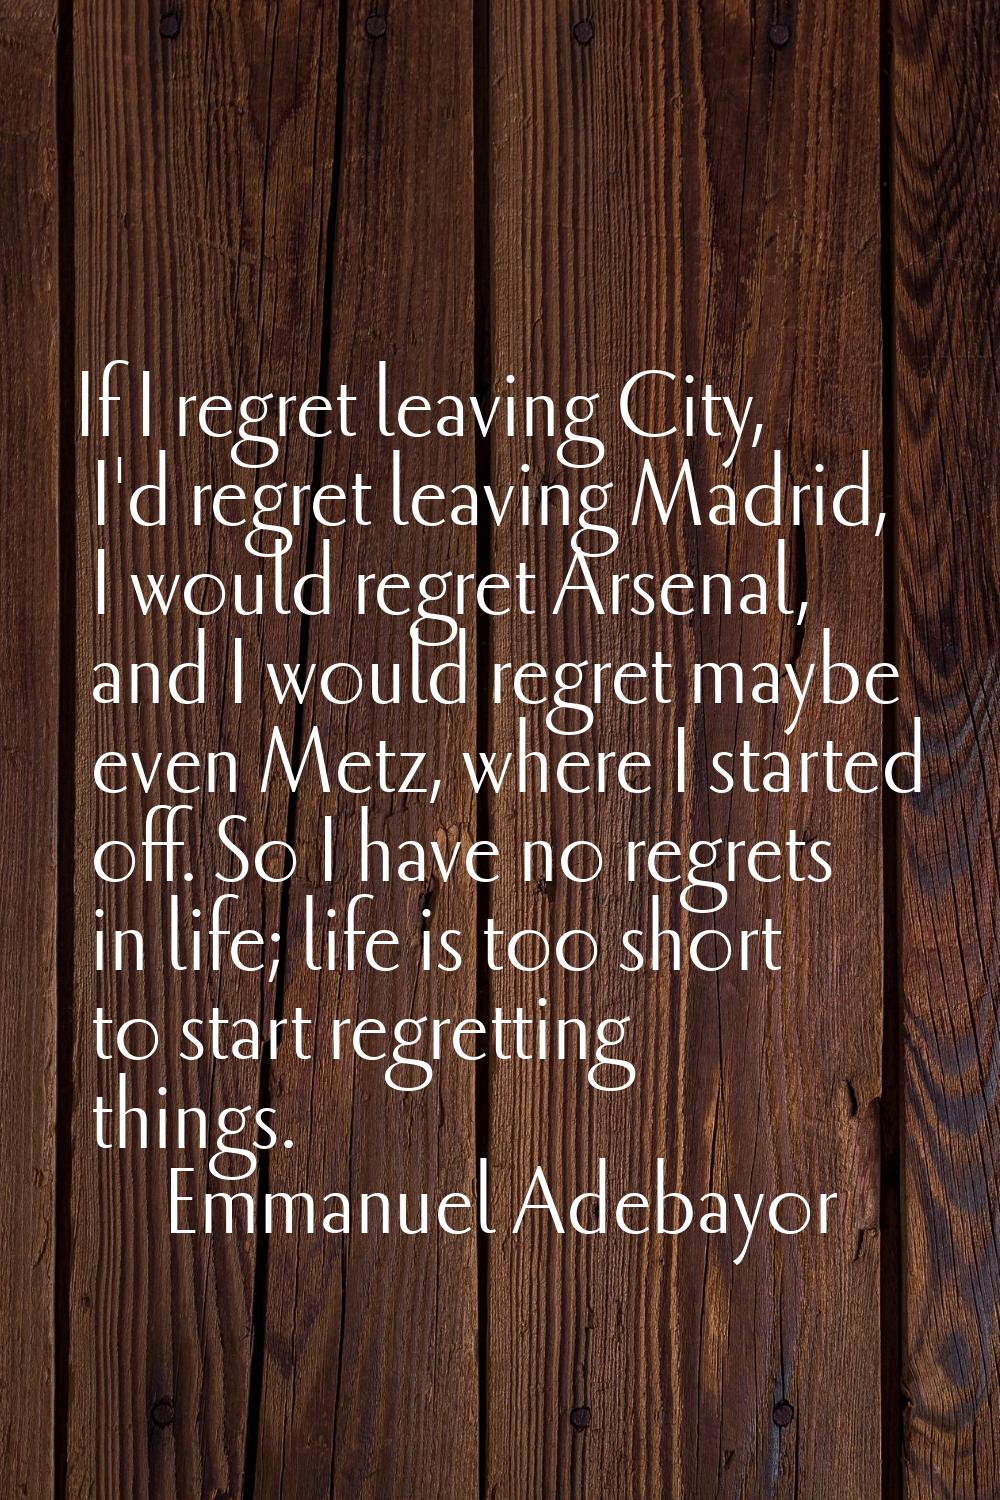 If I regret leaving City, I'd regret leaving Madrid, I would regret Arsenal, and I would regret may